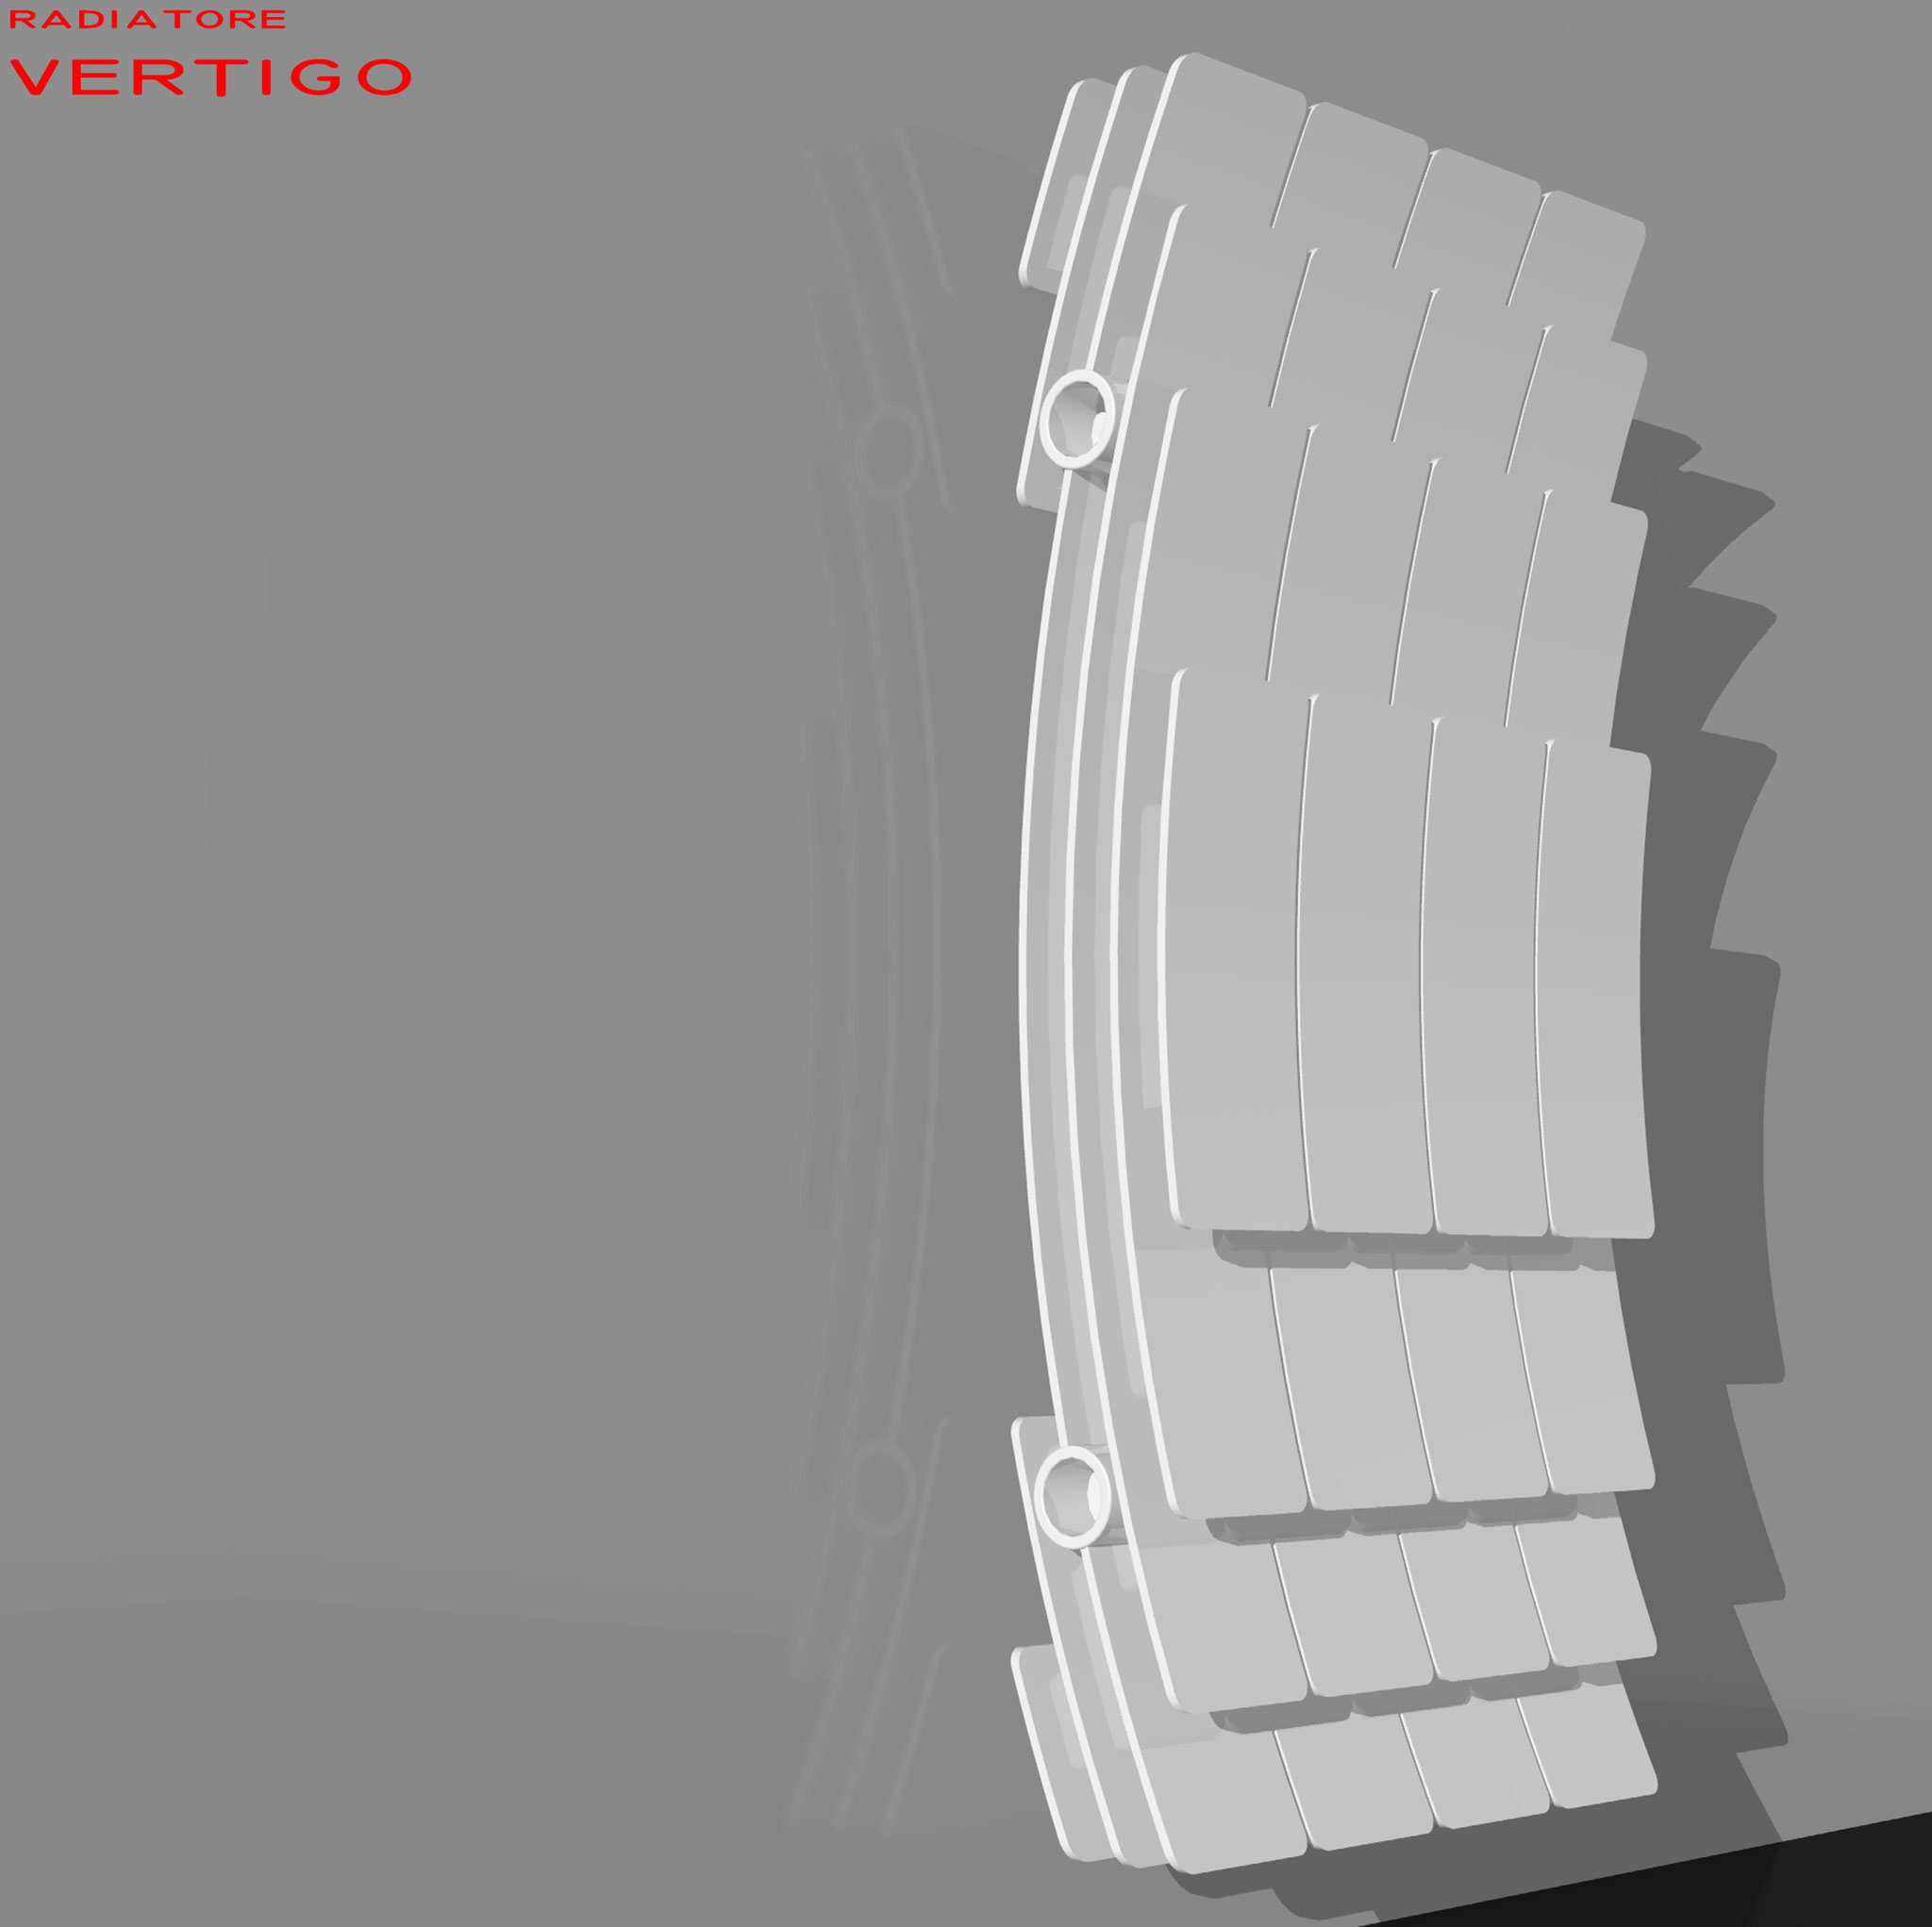 Vertigo - Studio radiatore 2008 ADHOC Gruppo Ragaini   rendering.